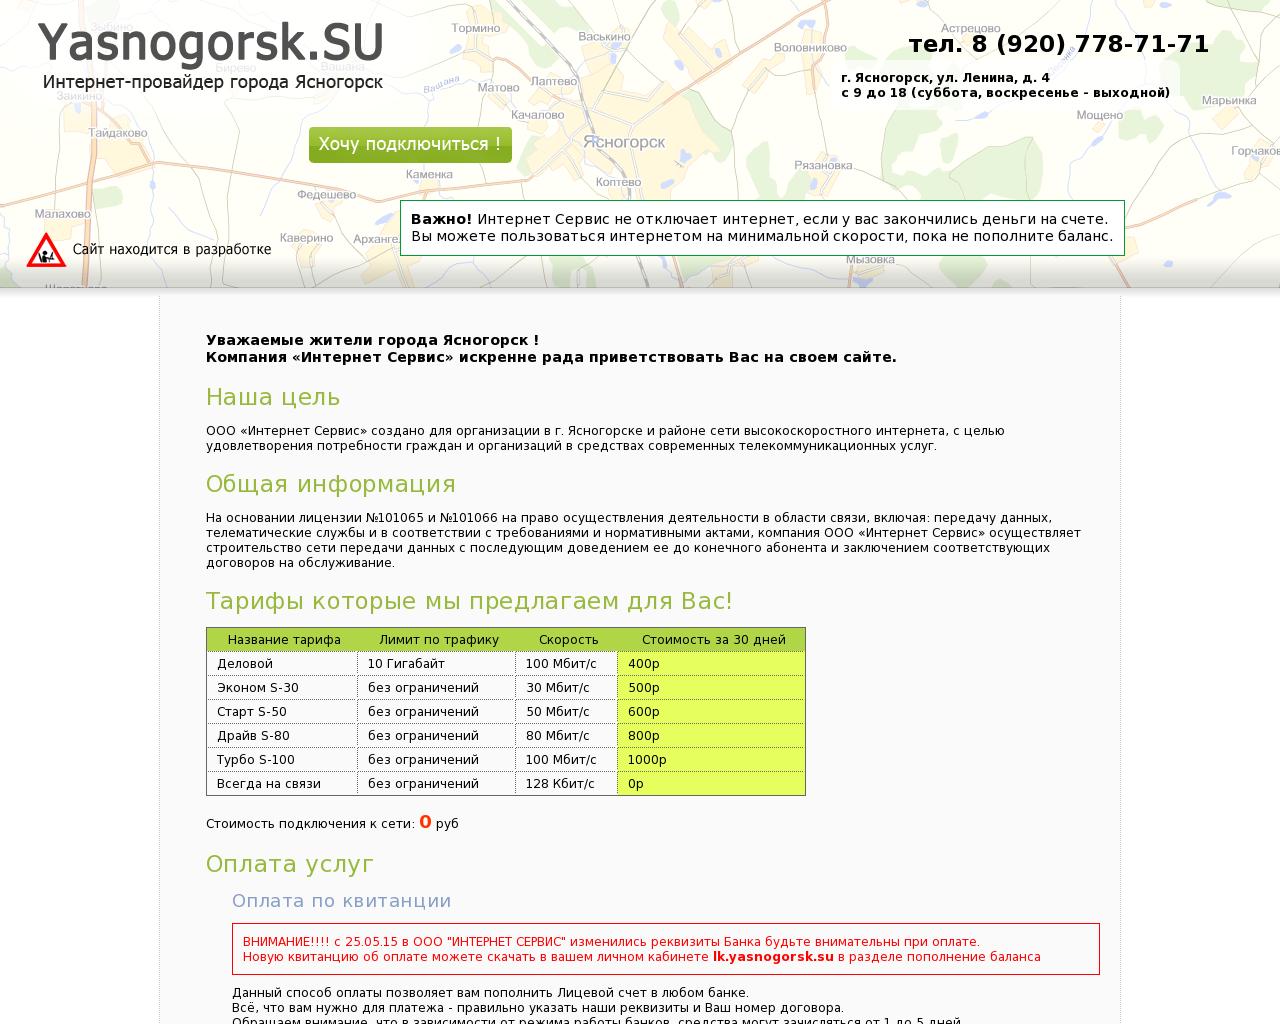 Изображение сайта yasnogorsk.su в разрешении 1280x1024